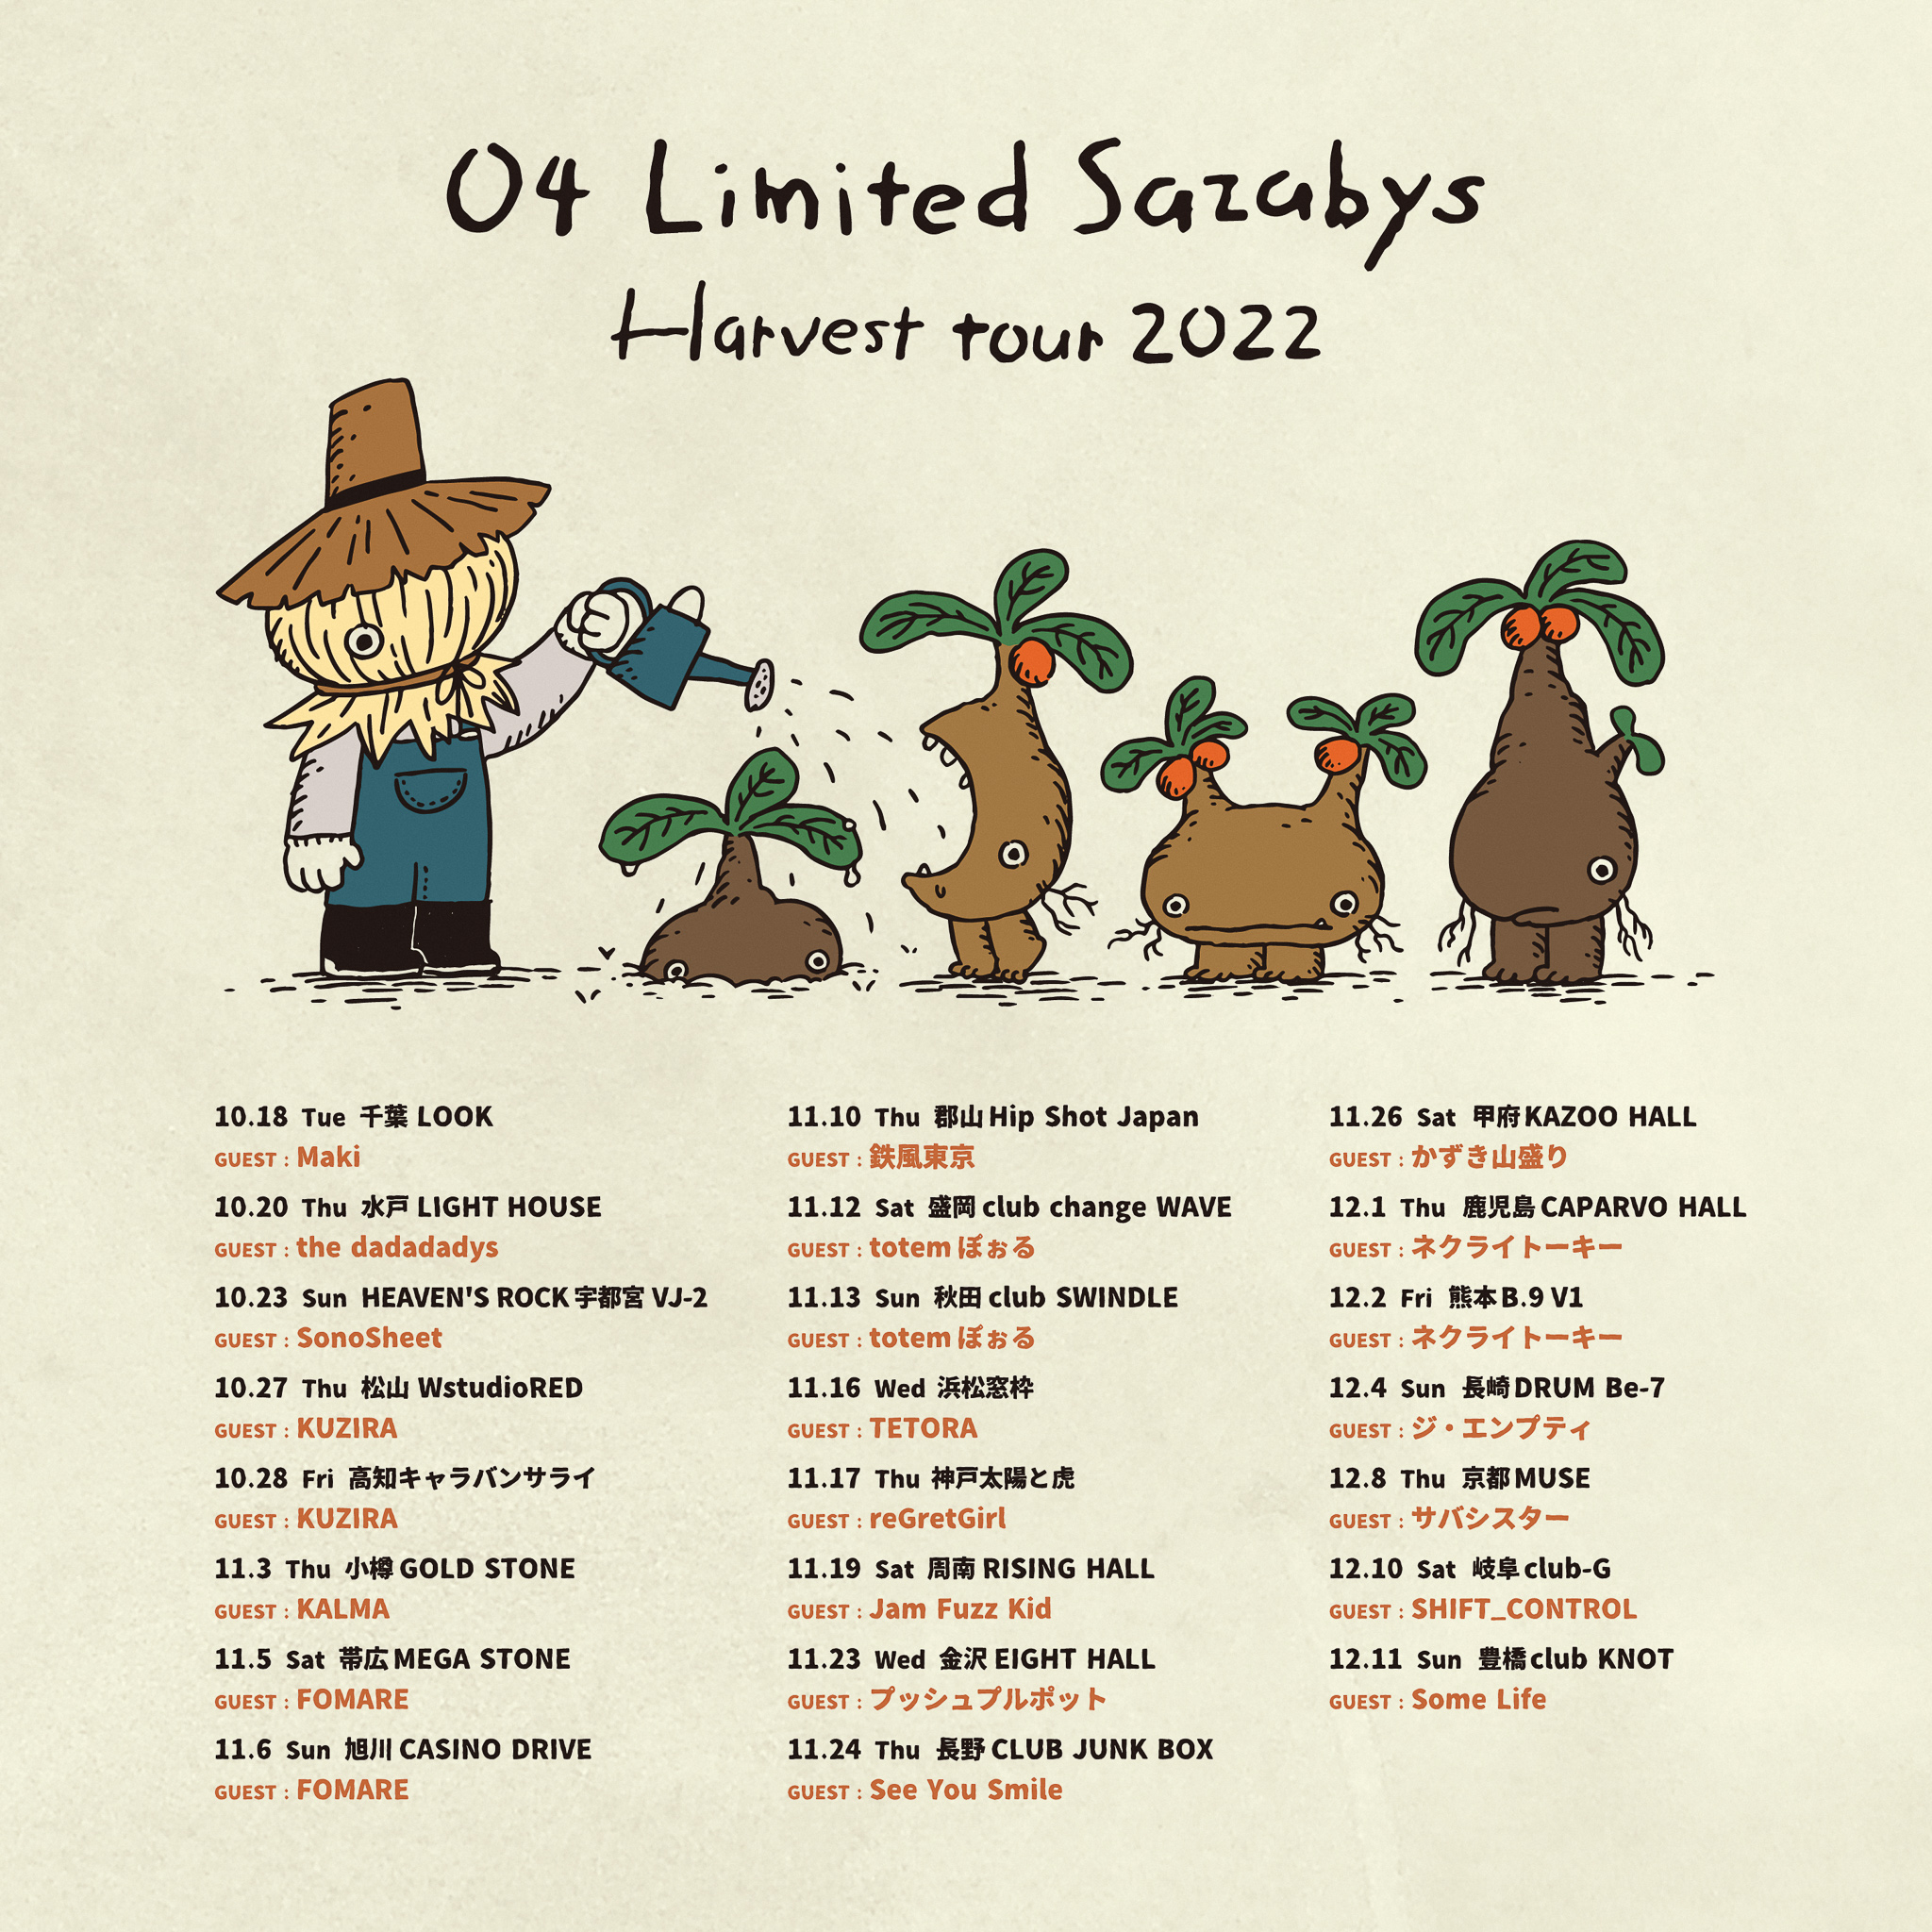 【愛媛】04 Limited Sazabys "Harvest tour 2022" (松山WstudioRED)